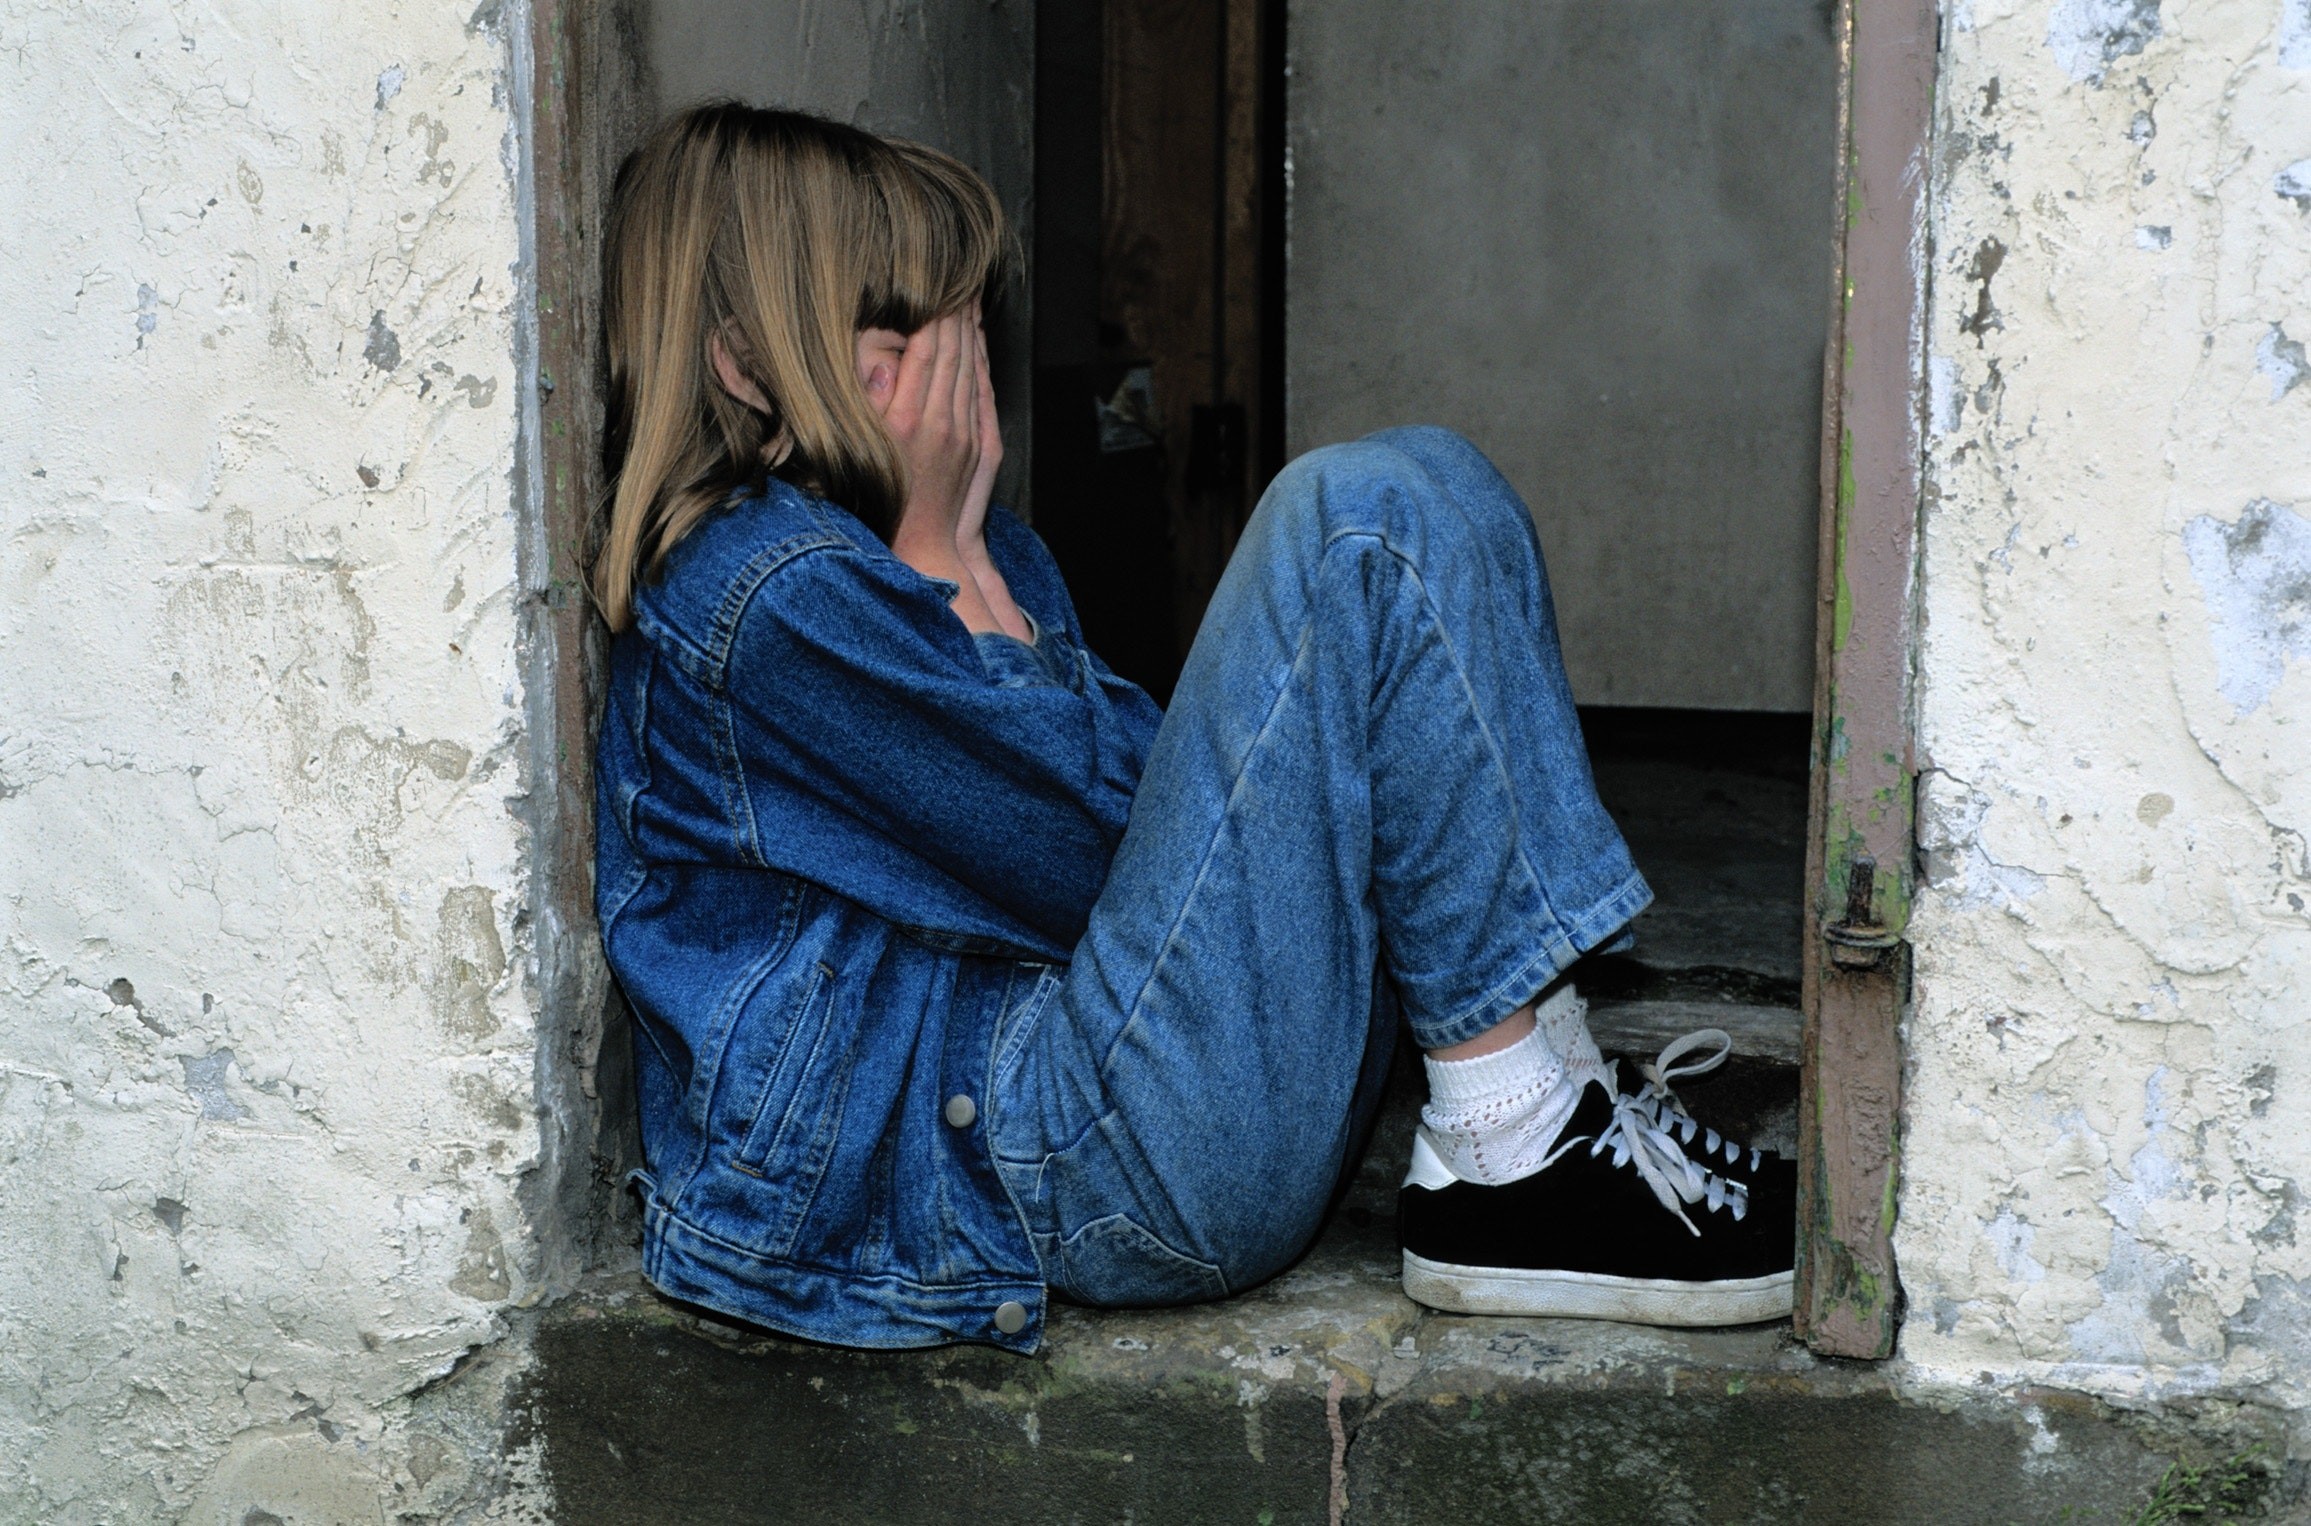 Saúde mental das crianças piorou nos últimos anos, sugere estudo (Foto: Pexels)